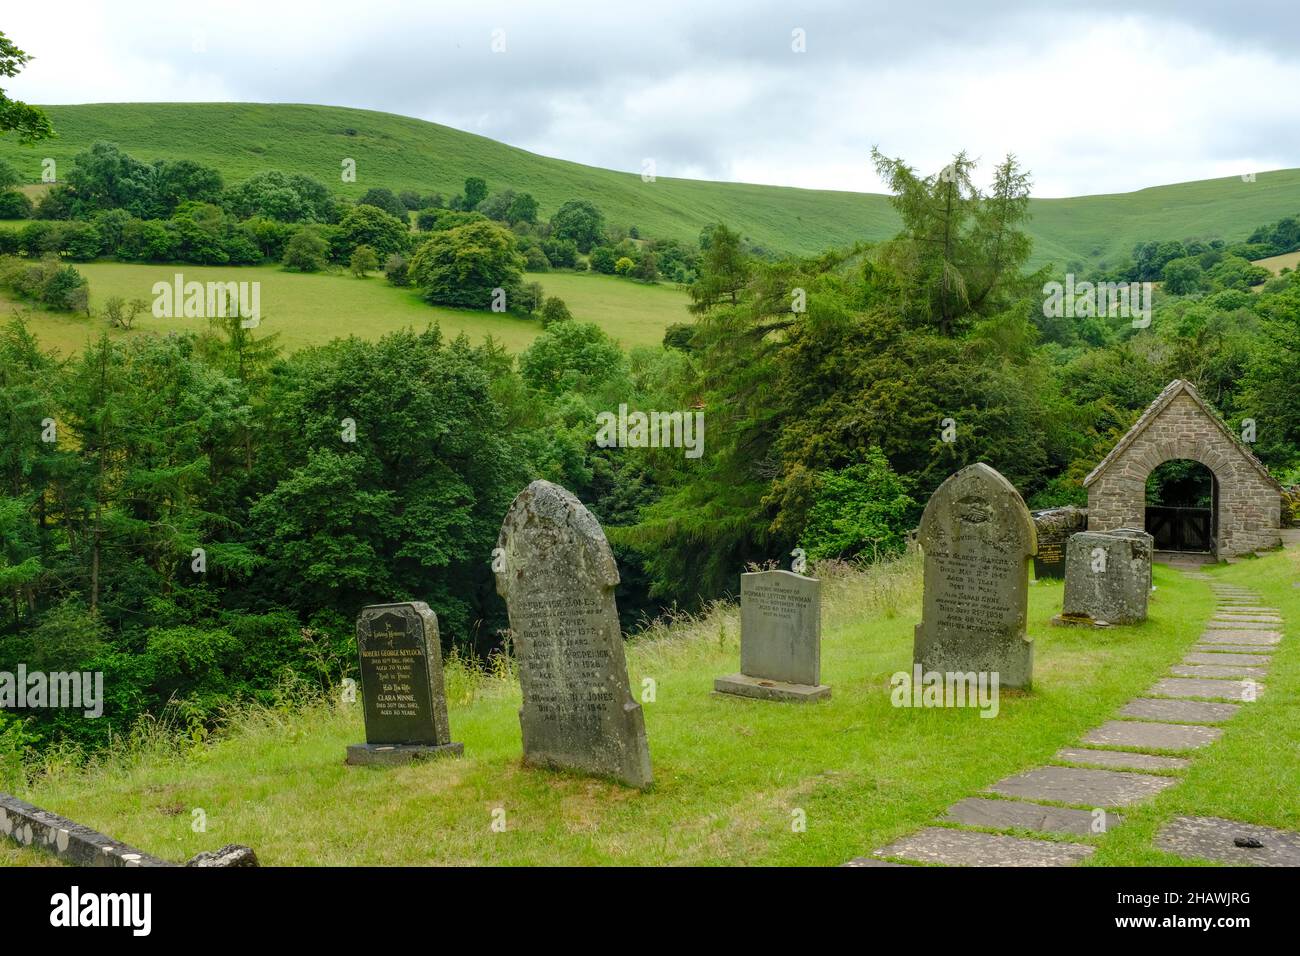 Cimetière de l'église Saint-Issui et porte couverte dans un paysage vallonné, Partrishow, Powys, pays de Galles, Royaume-Uni Banque D'Images